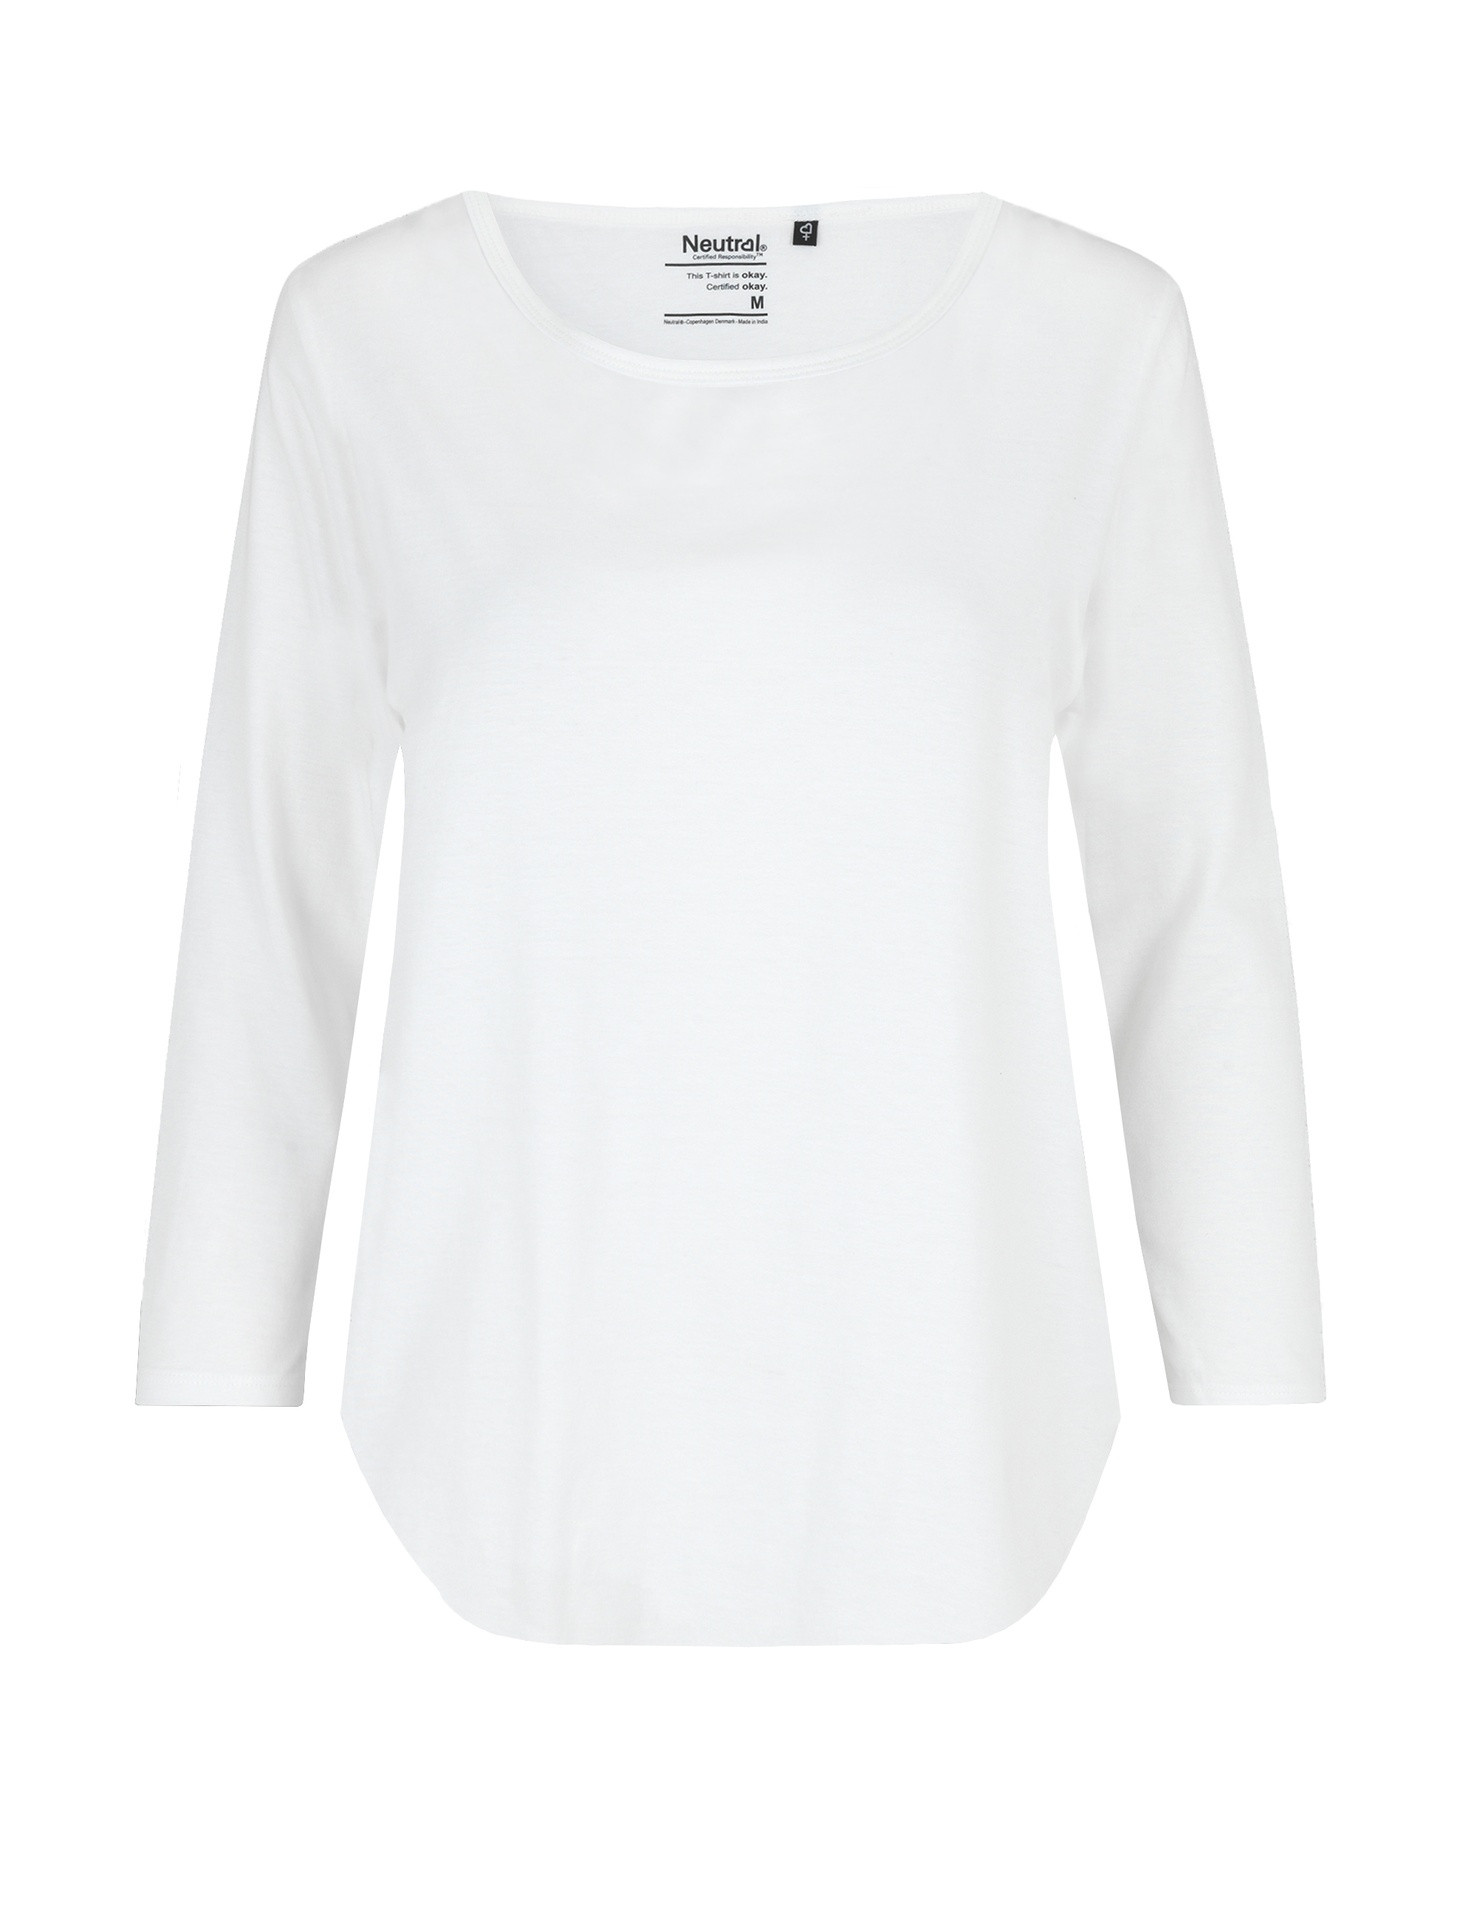 [PR/04523] Ladies Three Quarter Sleeve T-Shirt (White 01, XL)